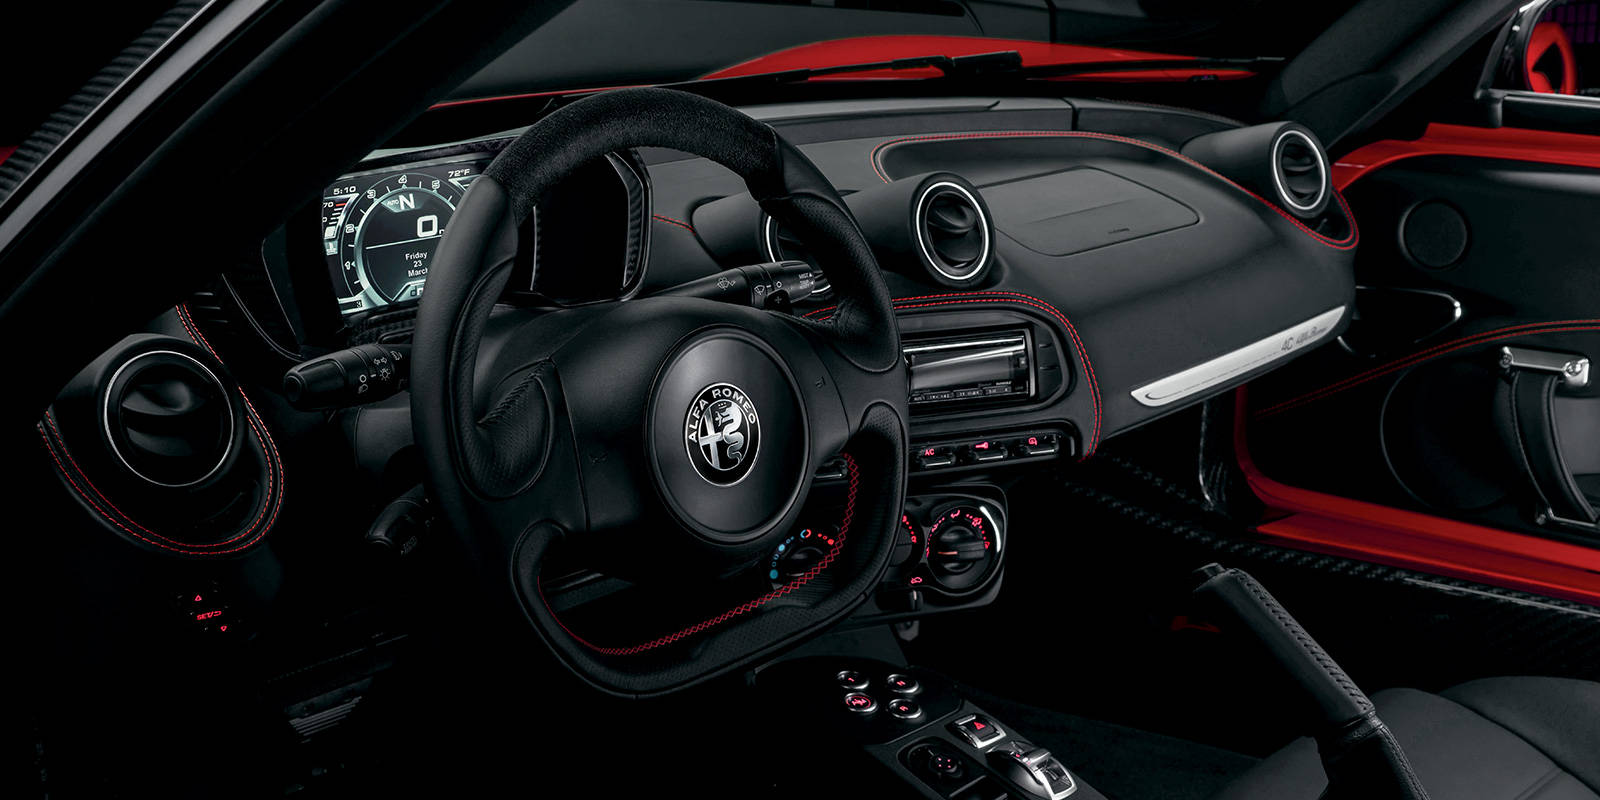 Alfa Romeo 4C interior - Cockpit